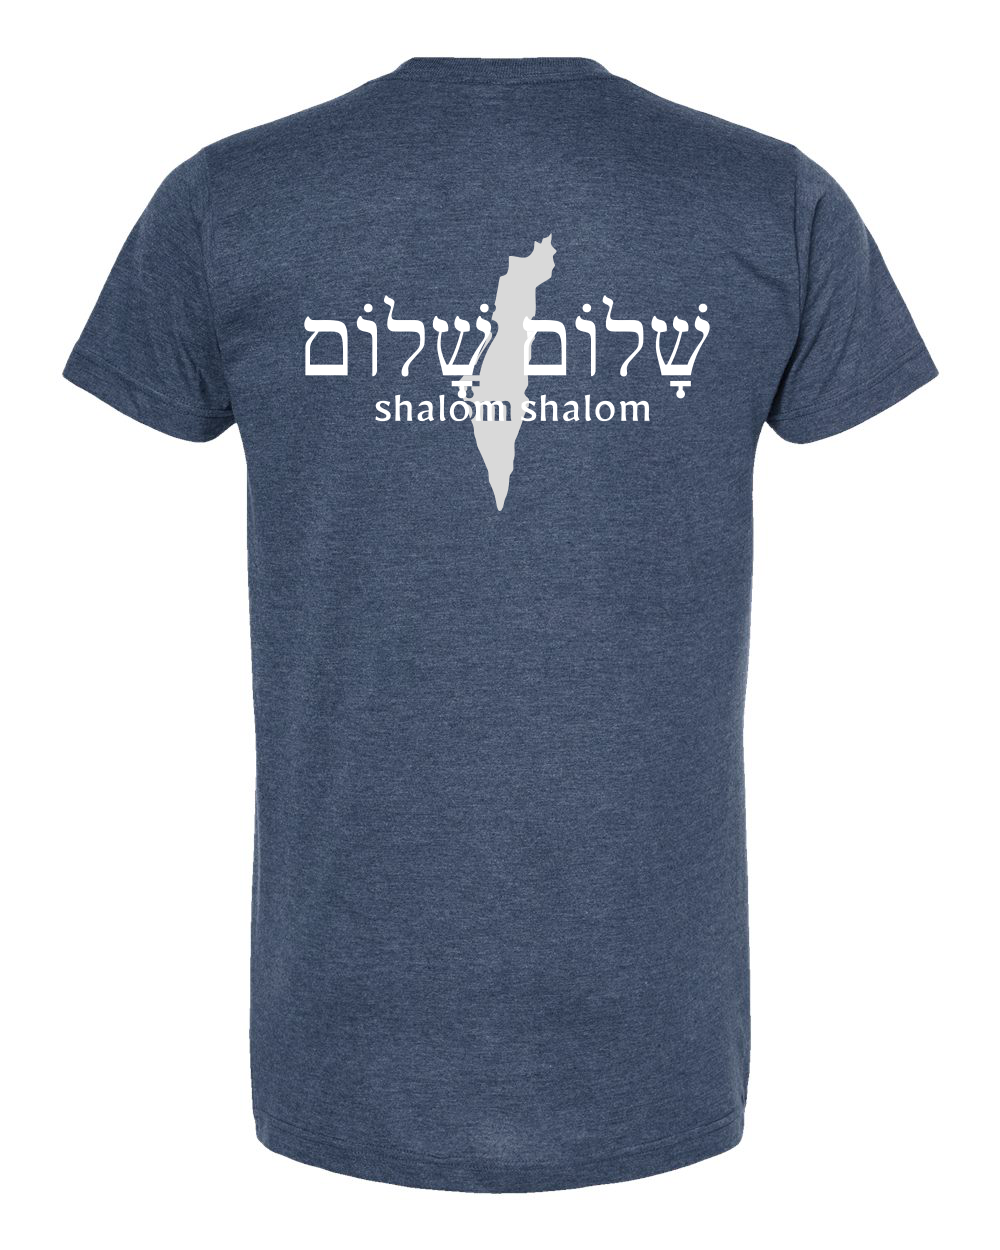 Shalom - Israel T-shirt